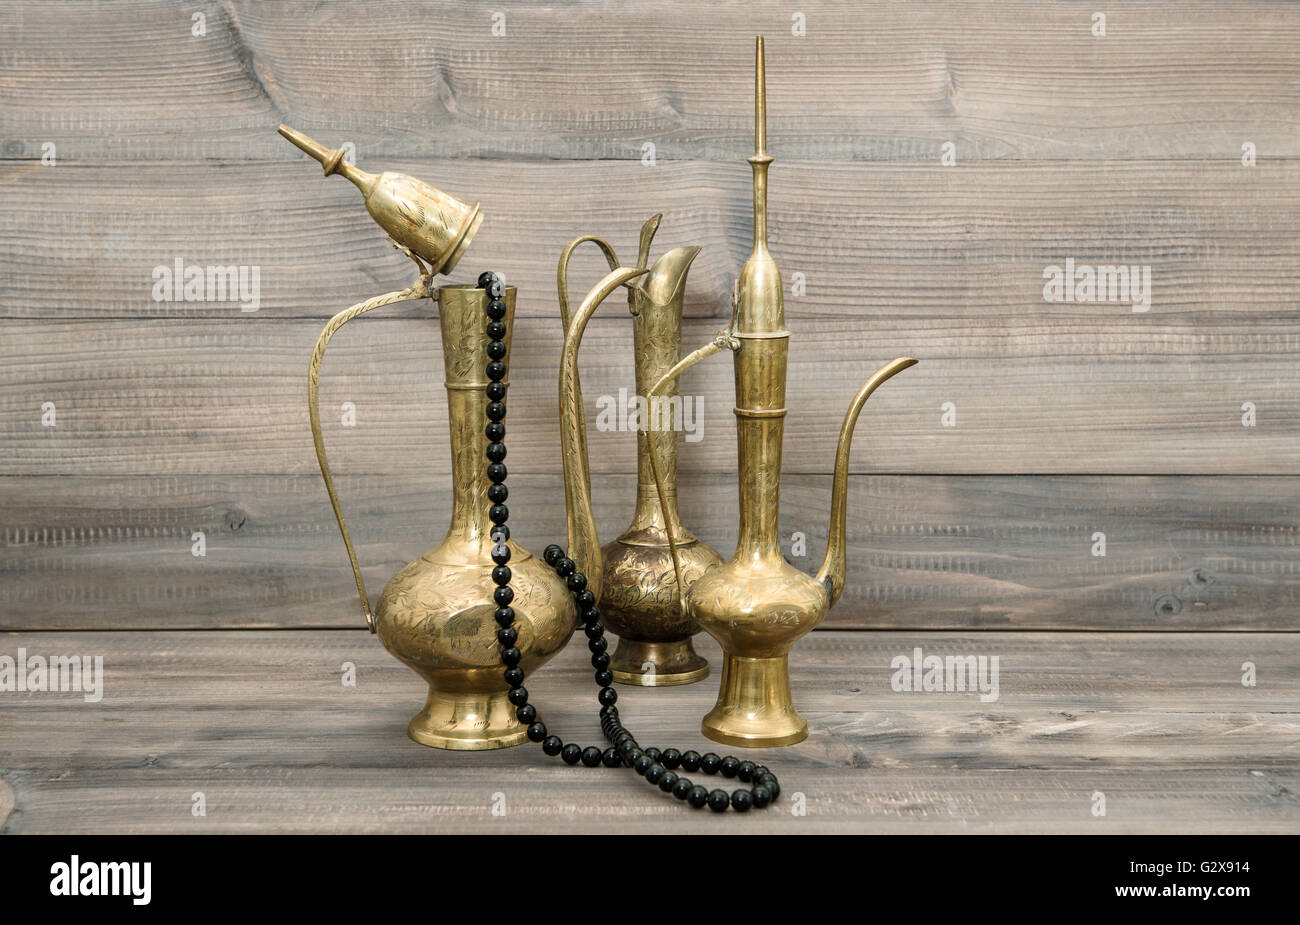 Vintage árabe jarra, vase, tetera. Golden elementos decorativos orientales  e islámicos, rosario Fotografía de stock - Alamy